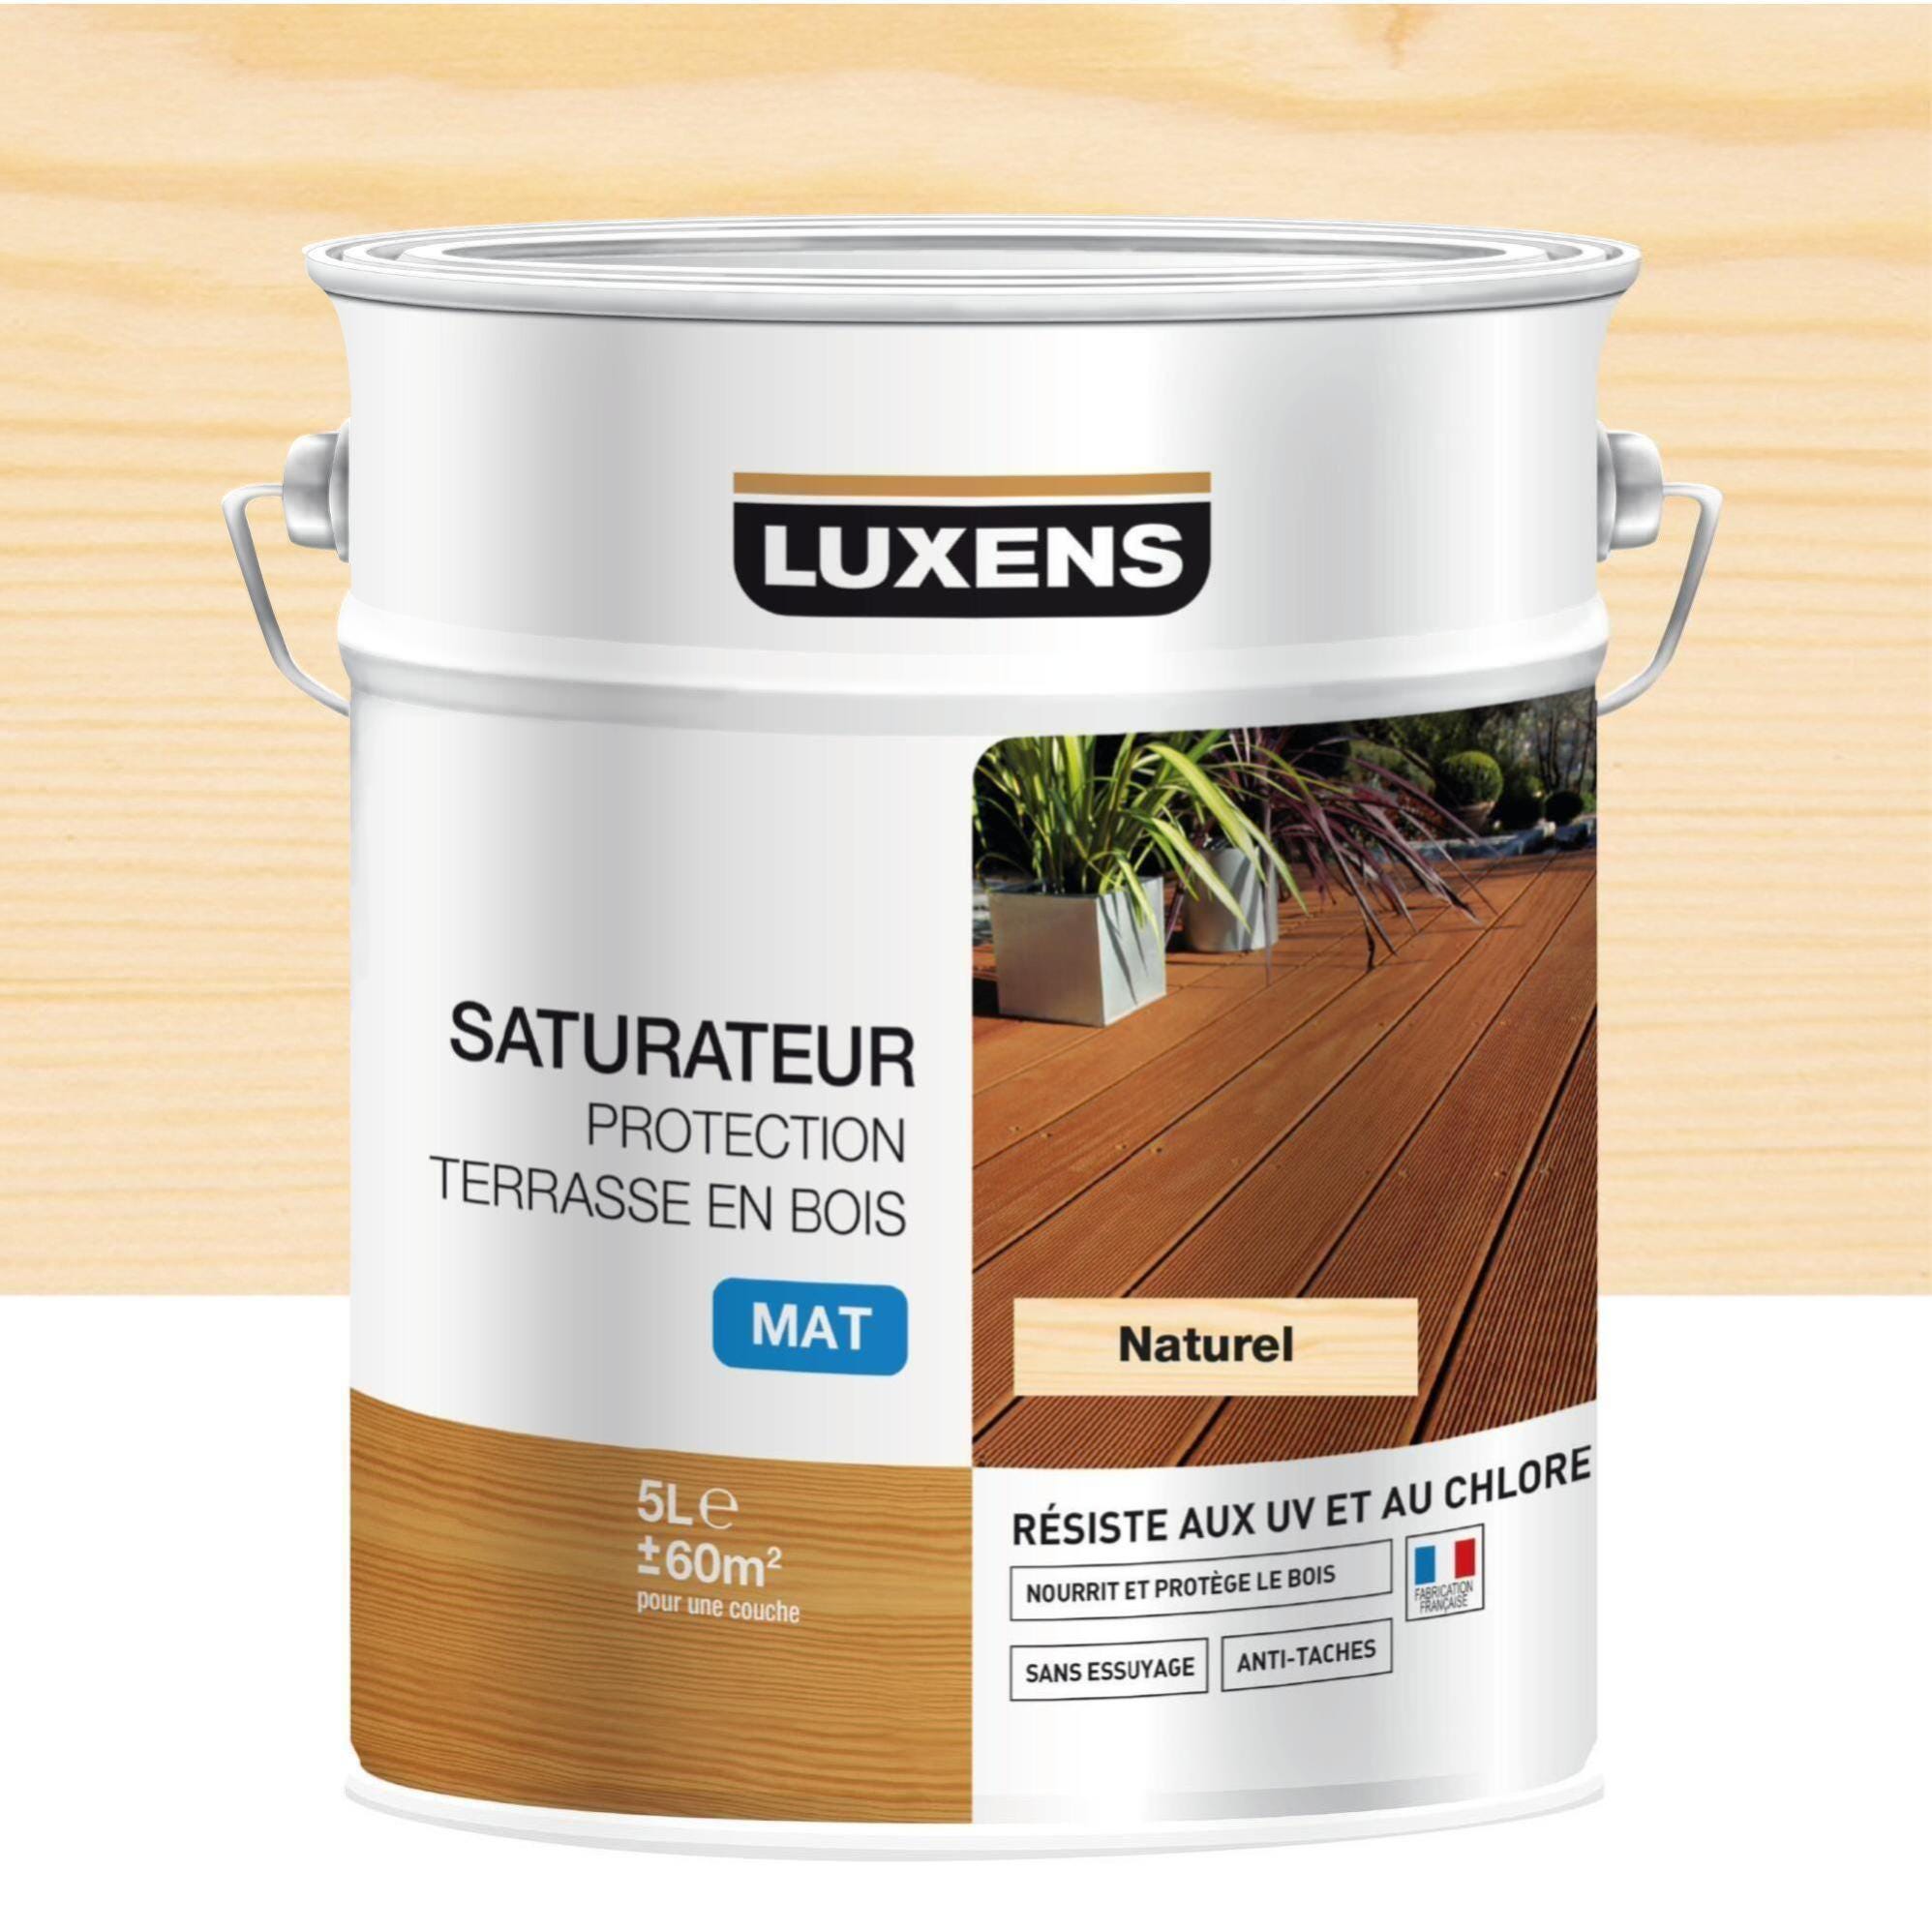 Saturateur pour bois extérieur LUXENS Protection terrasse en bois naturel  mat 5